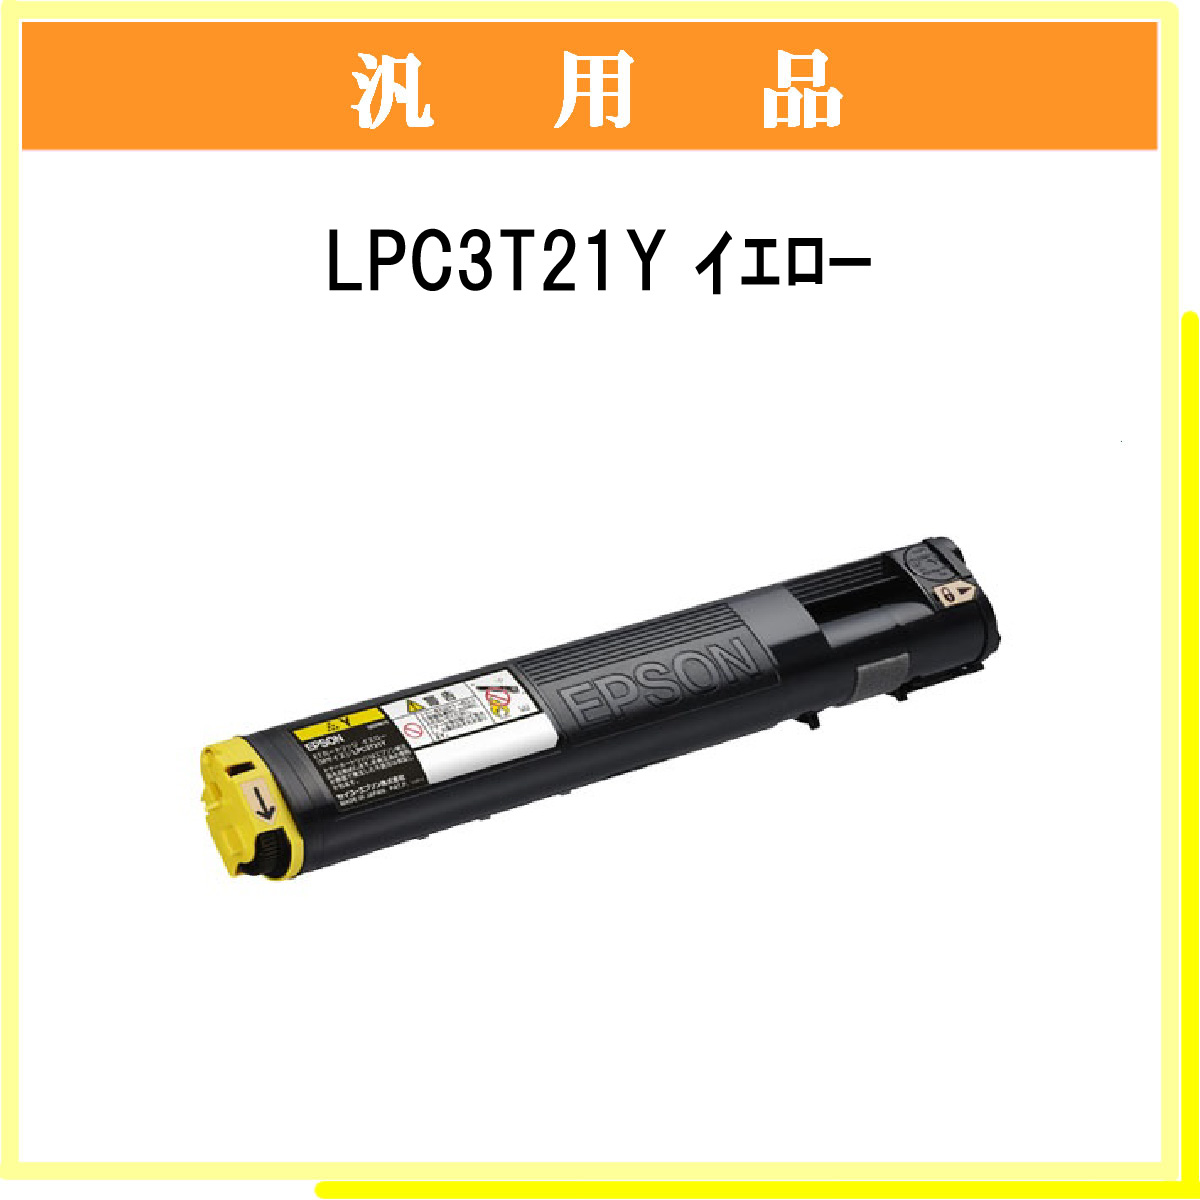 LPC3T21Y 汎用品